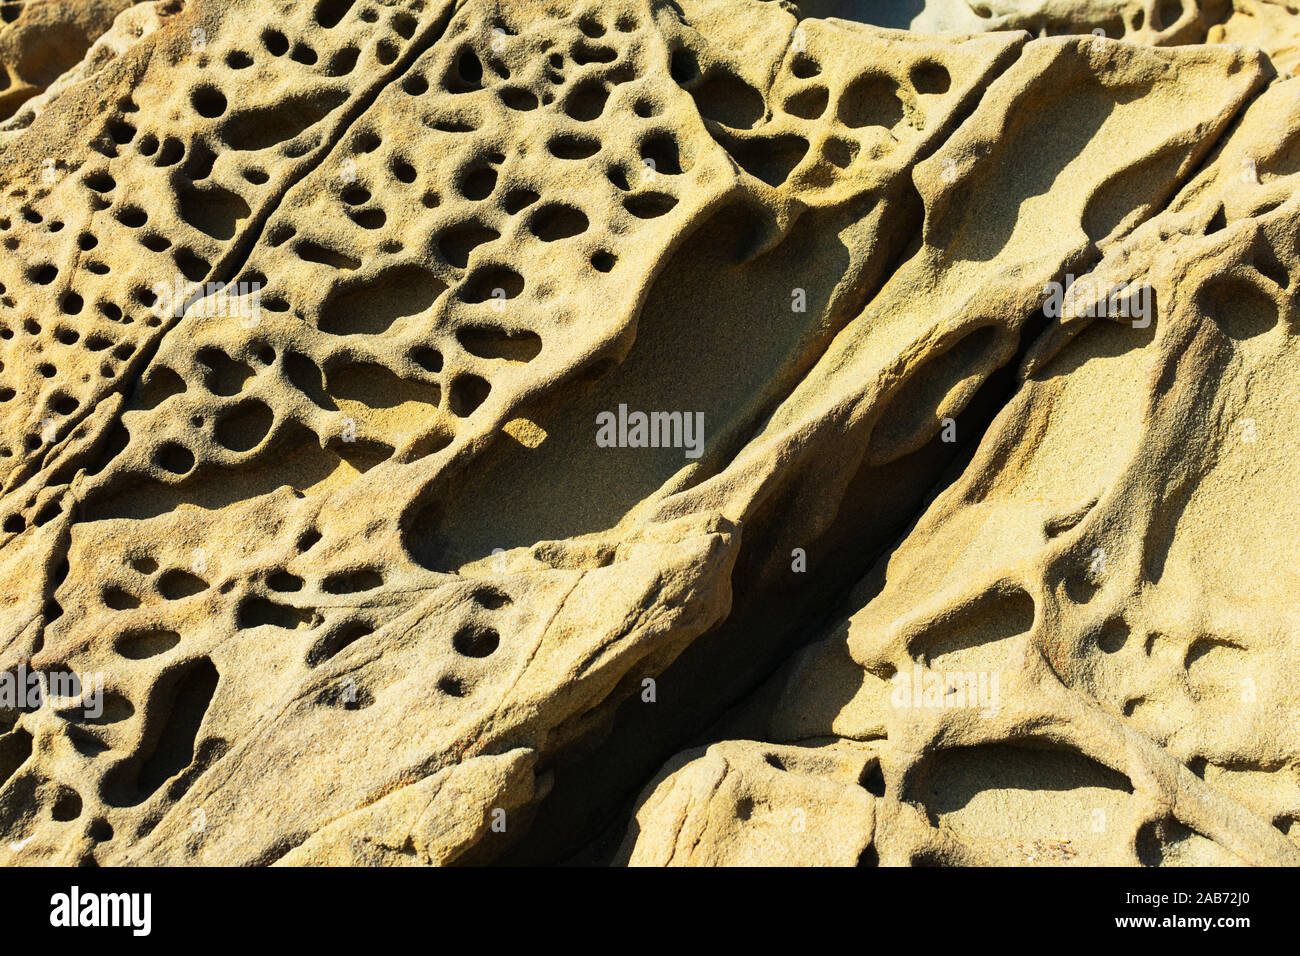 La formazione di tafoni, univocamente in arenaria a trama, grotta come caratteristiche e favo di miele come le strutture create in roccia attraverso un processo di resistenza agli agenti atmosferici. Foto Stock